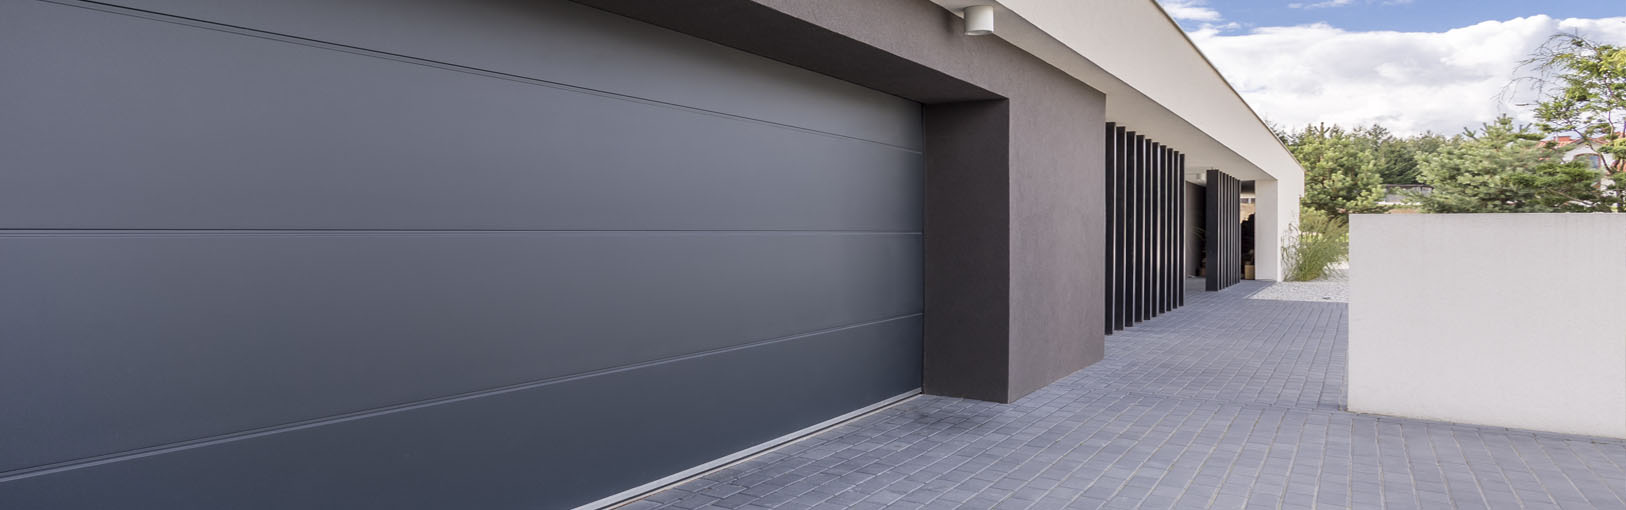 puerta automatica garaje madrid - Puertas de garaje con accionamiento eléctrico